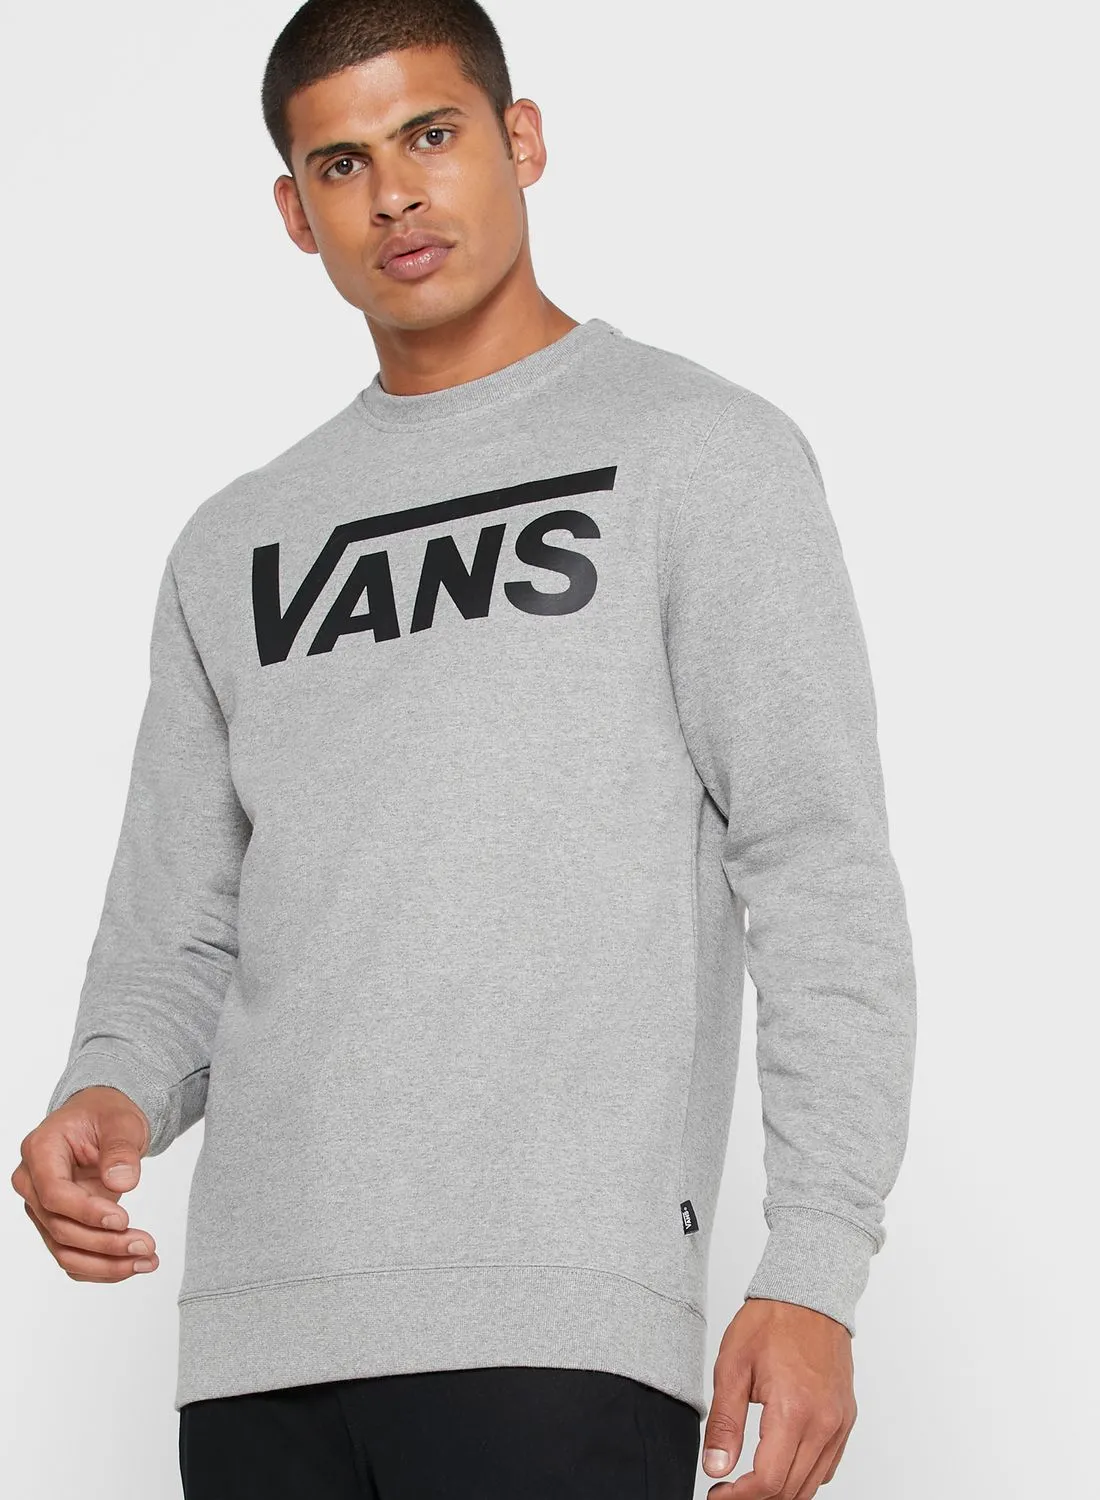 VANS Cement Classic Sweatshirt